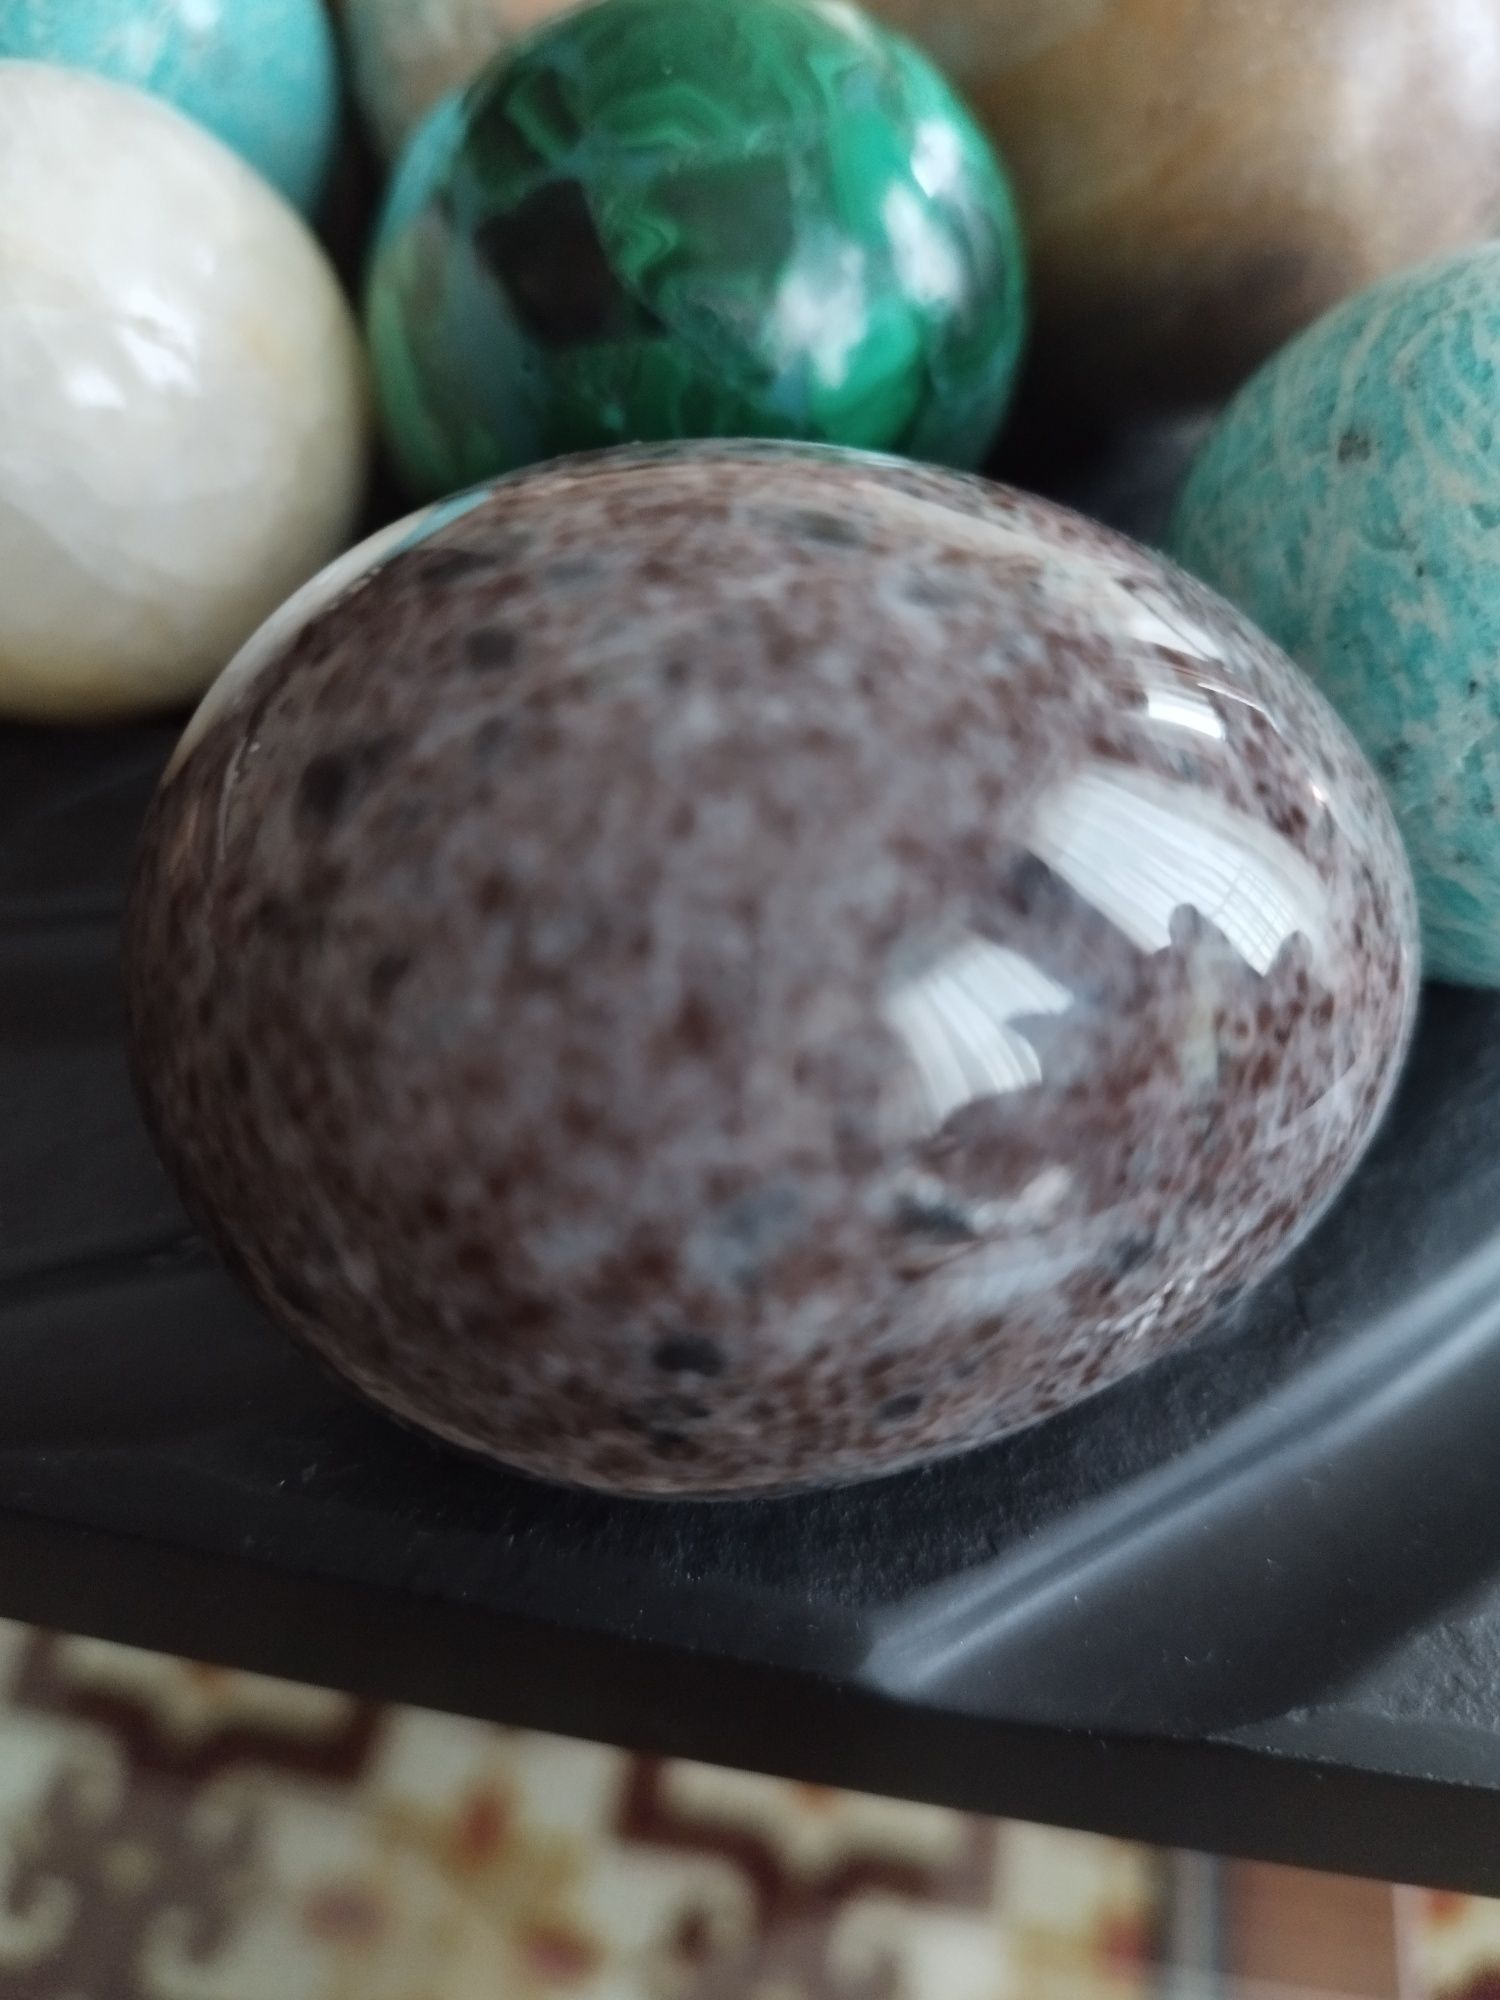 Ovos de pedras nobres